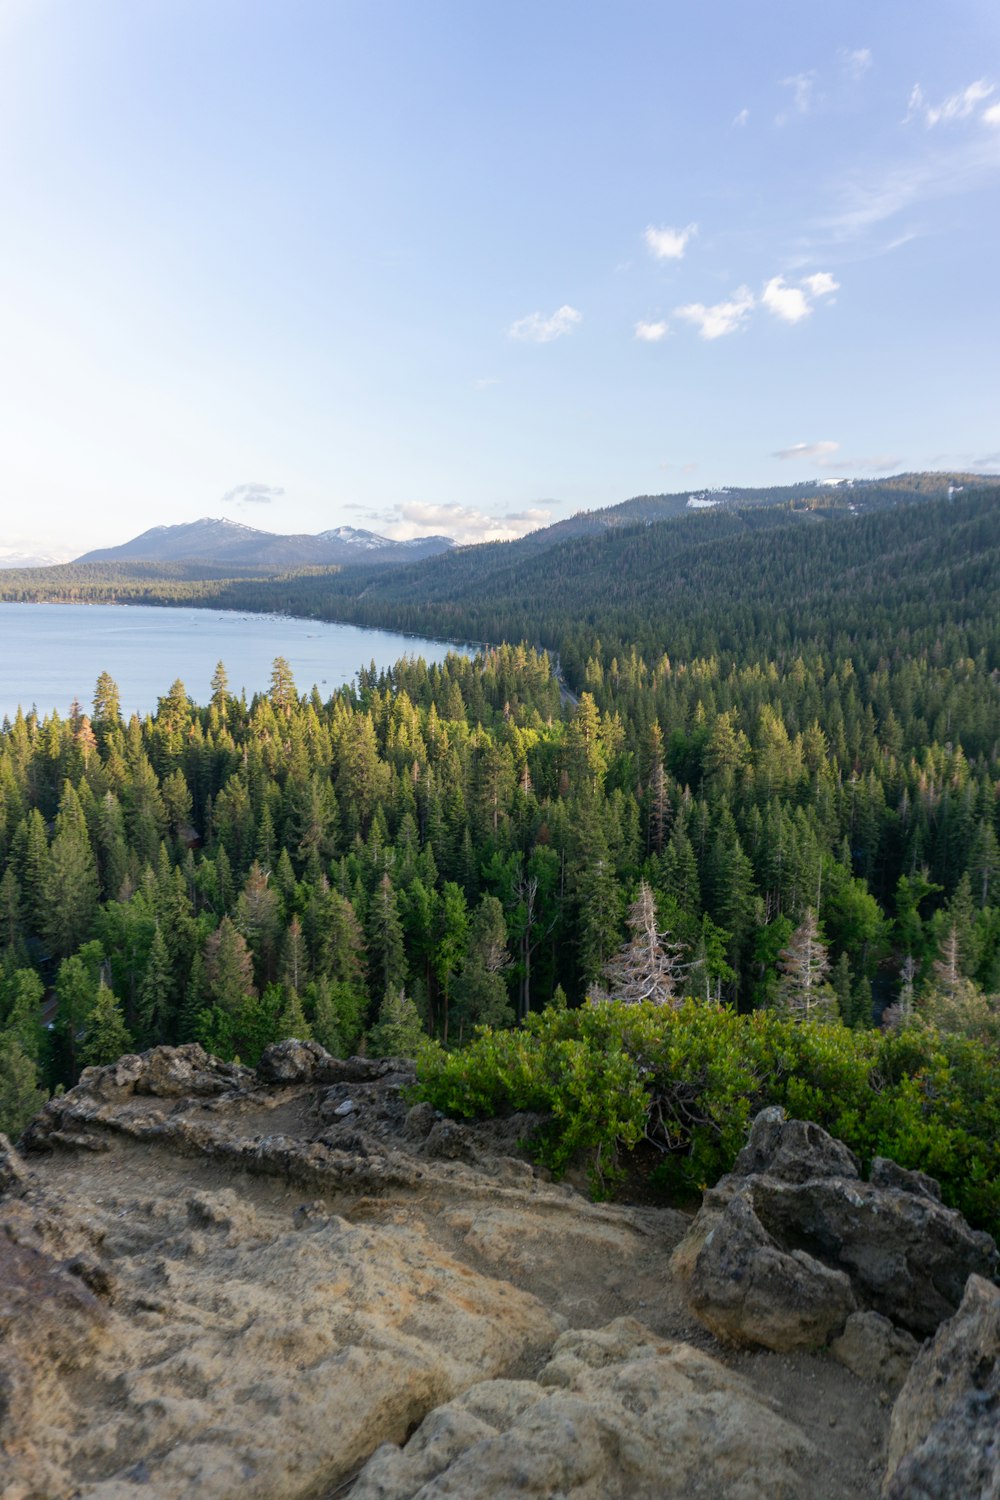 uma vista panorâmica de um lago cercado por árvores